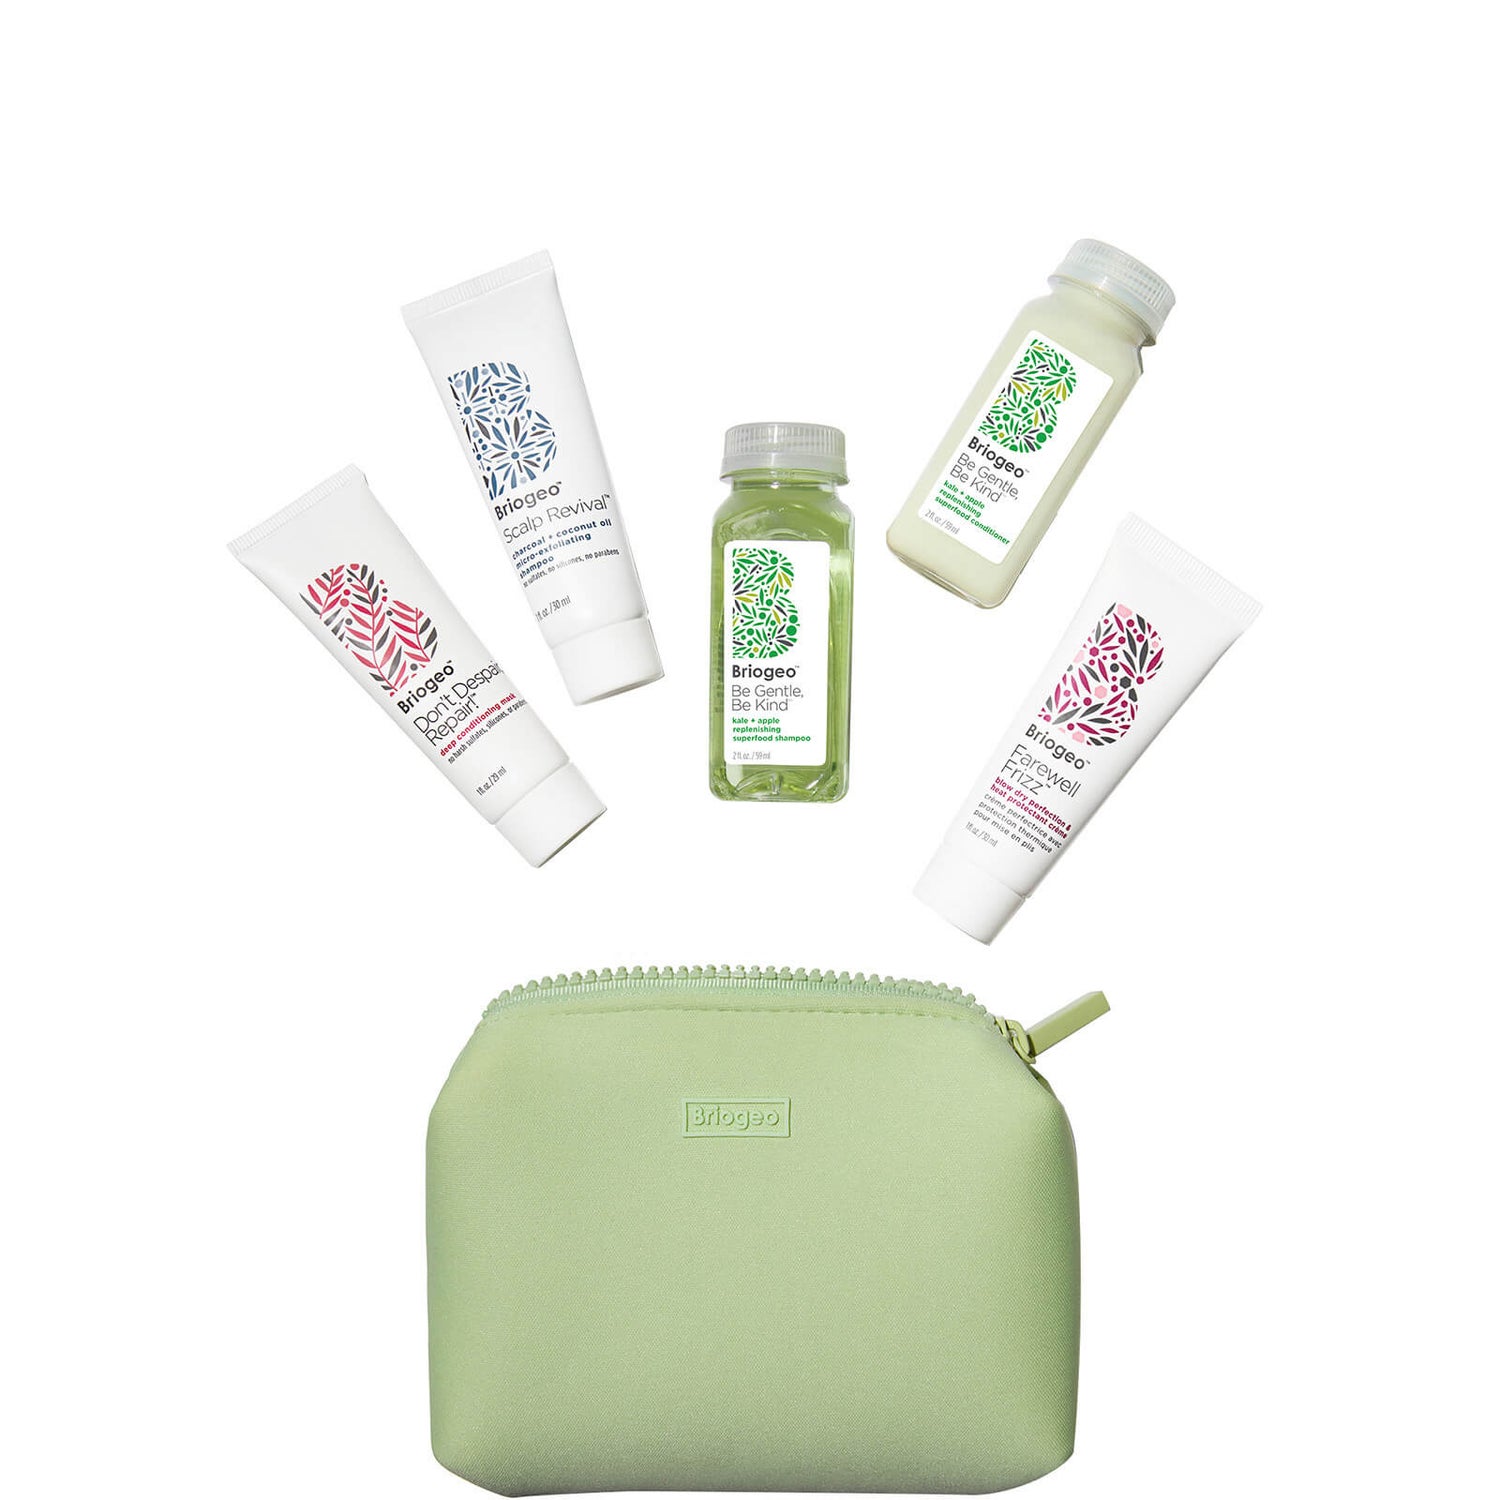 Briogeo Besties Apple, Matcha + Kale Clean Hair Discovery Kit